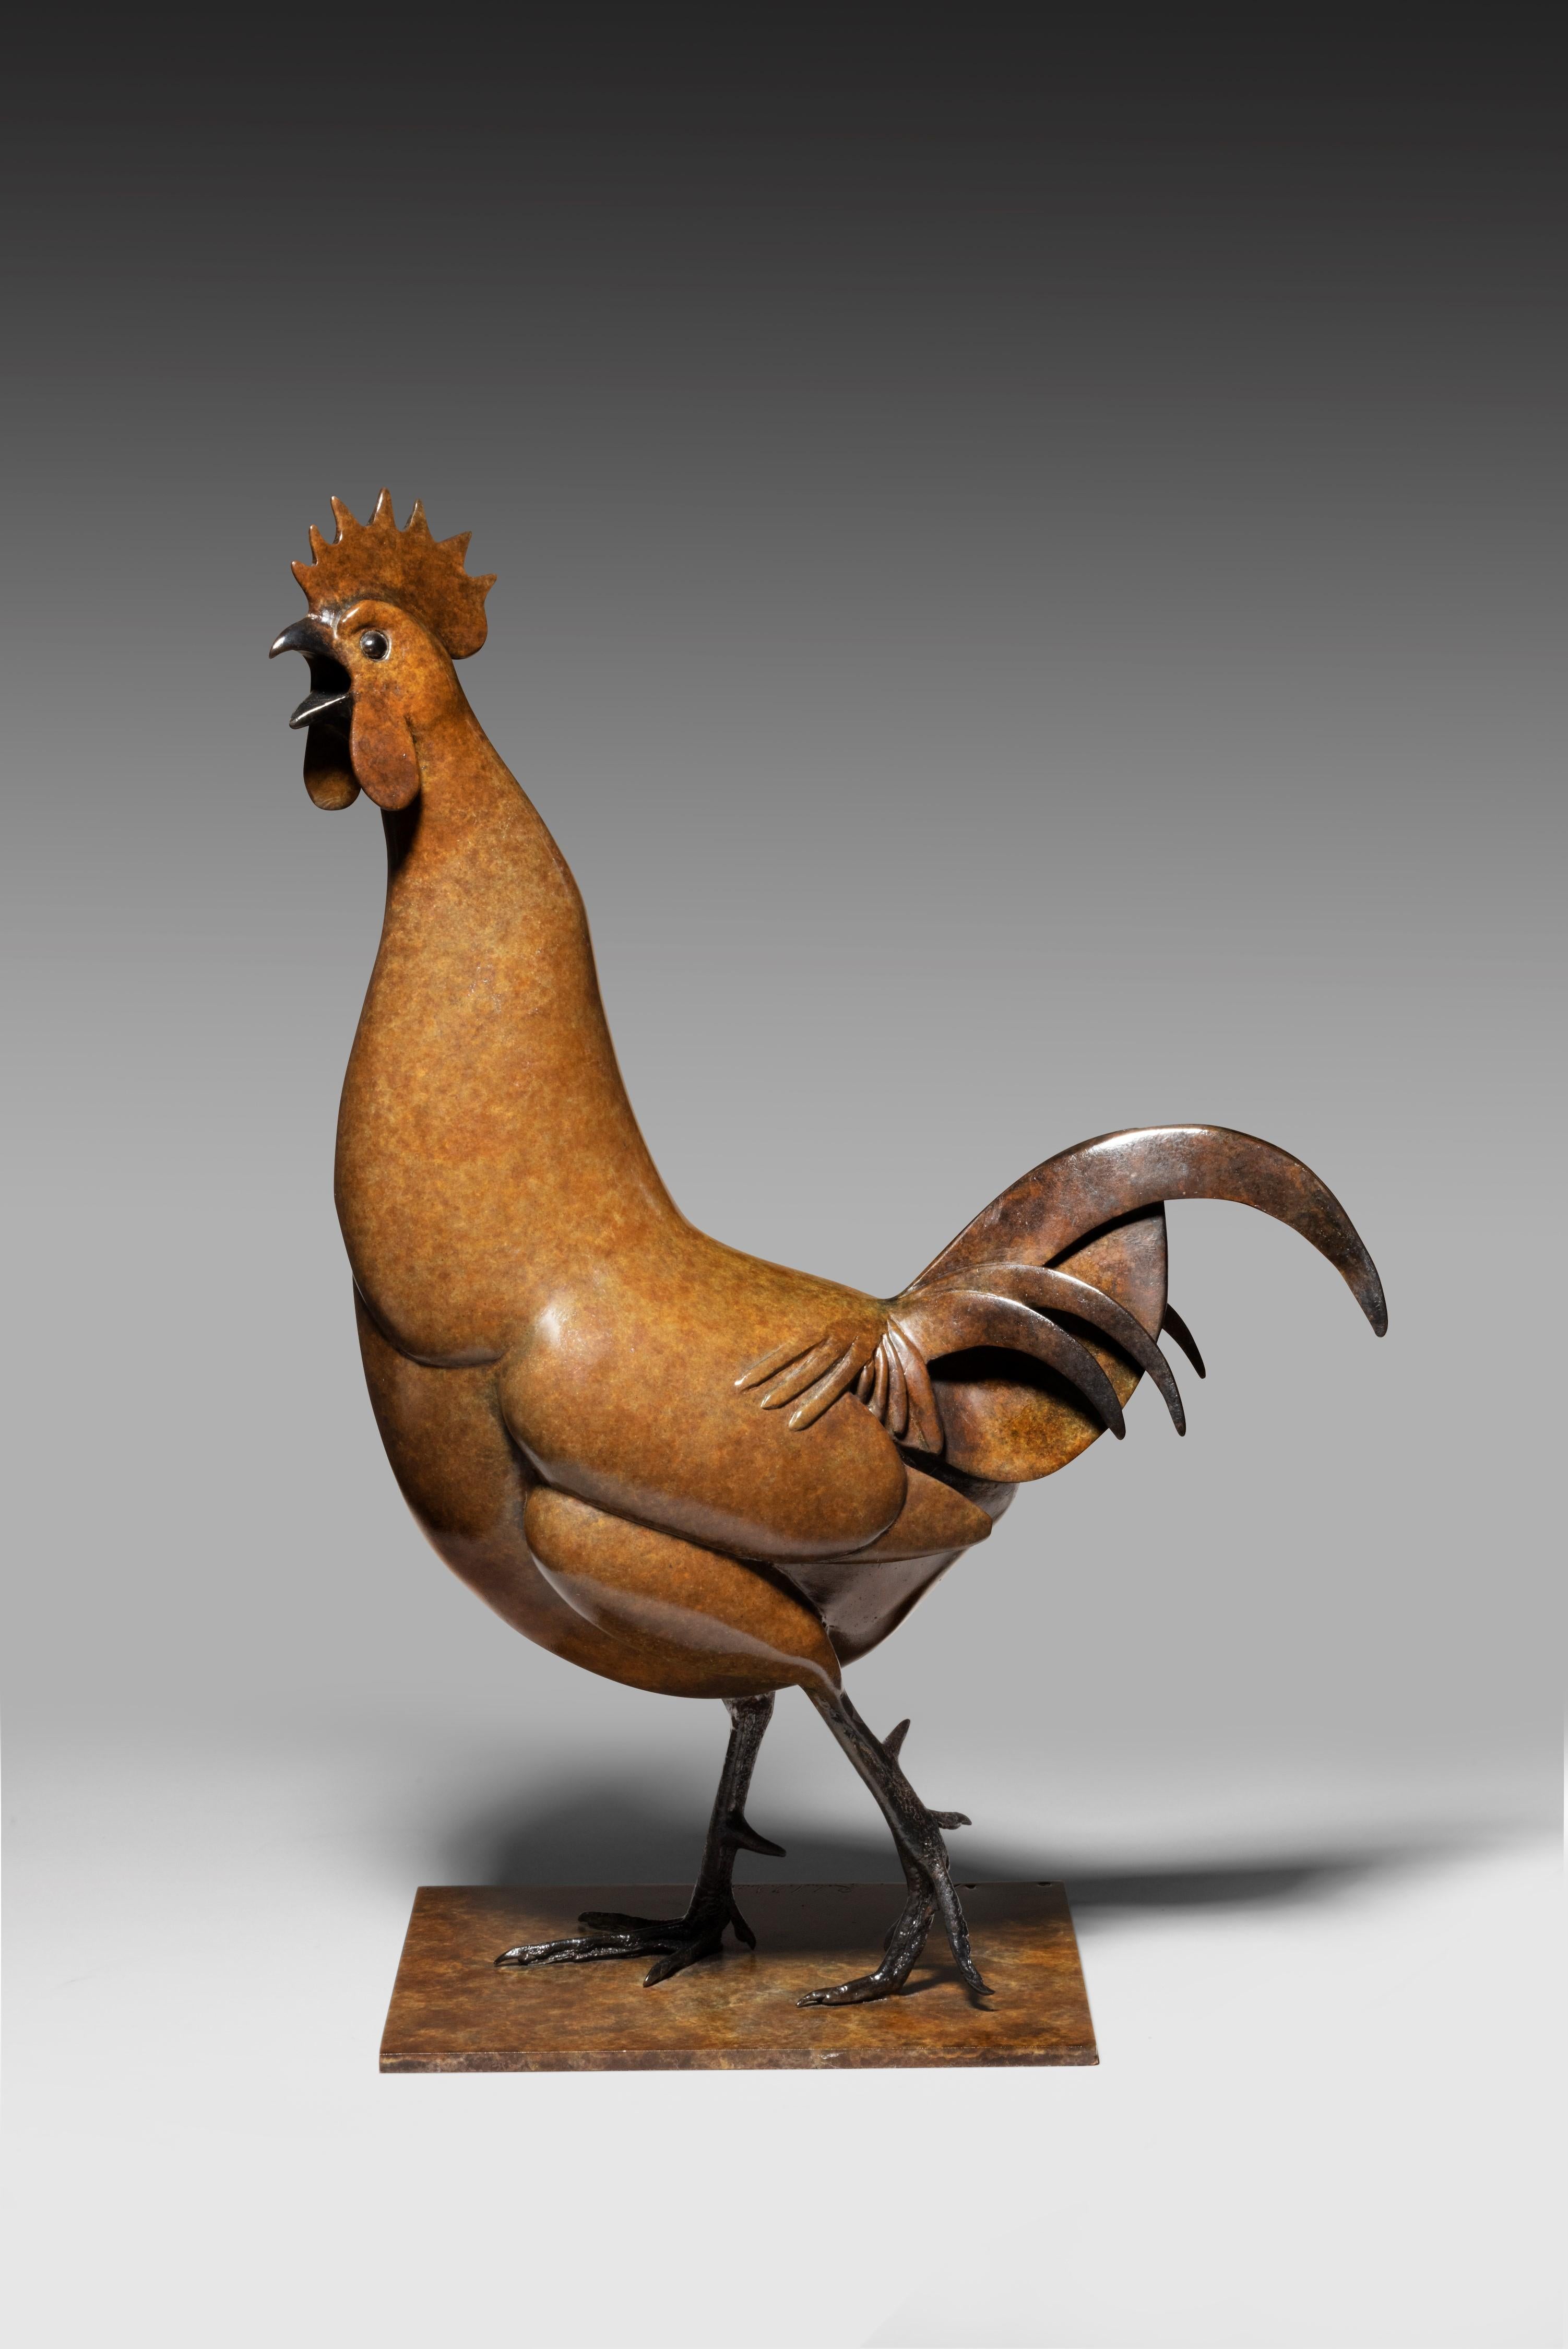 Richard Smith Still-Life Sculpture - 'Cockerel' Bronze Animal Sculpture of a Brown Cockerel. Farm wildlife sculpture